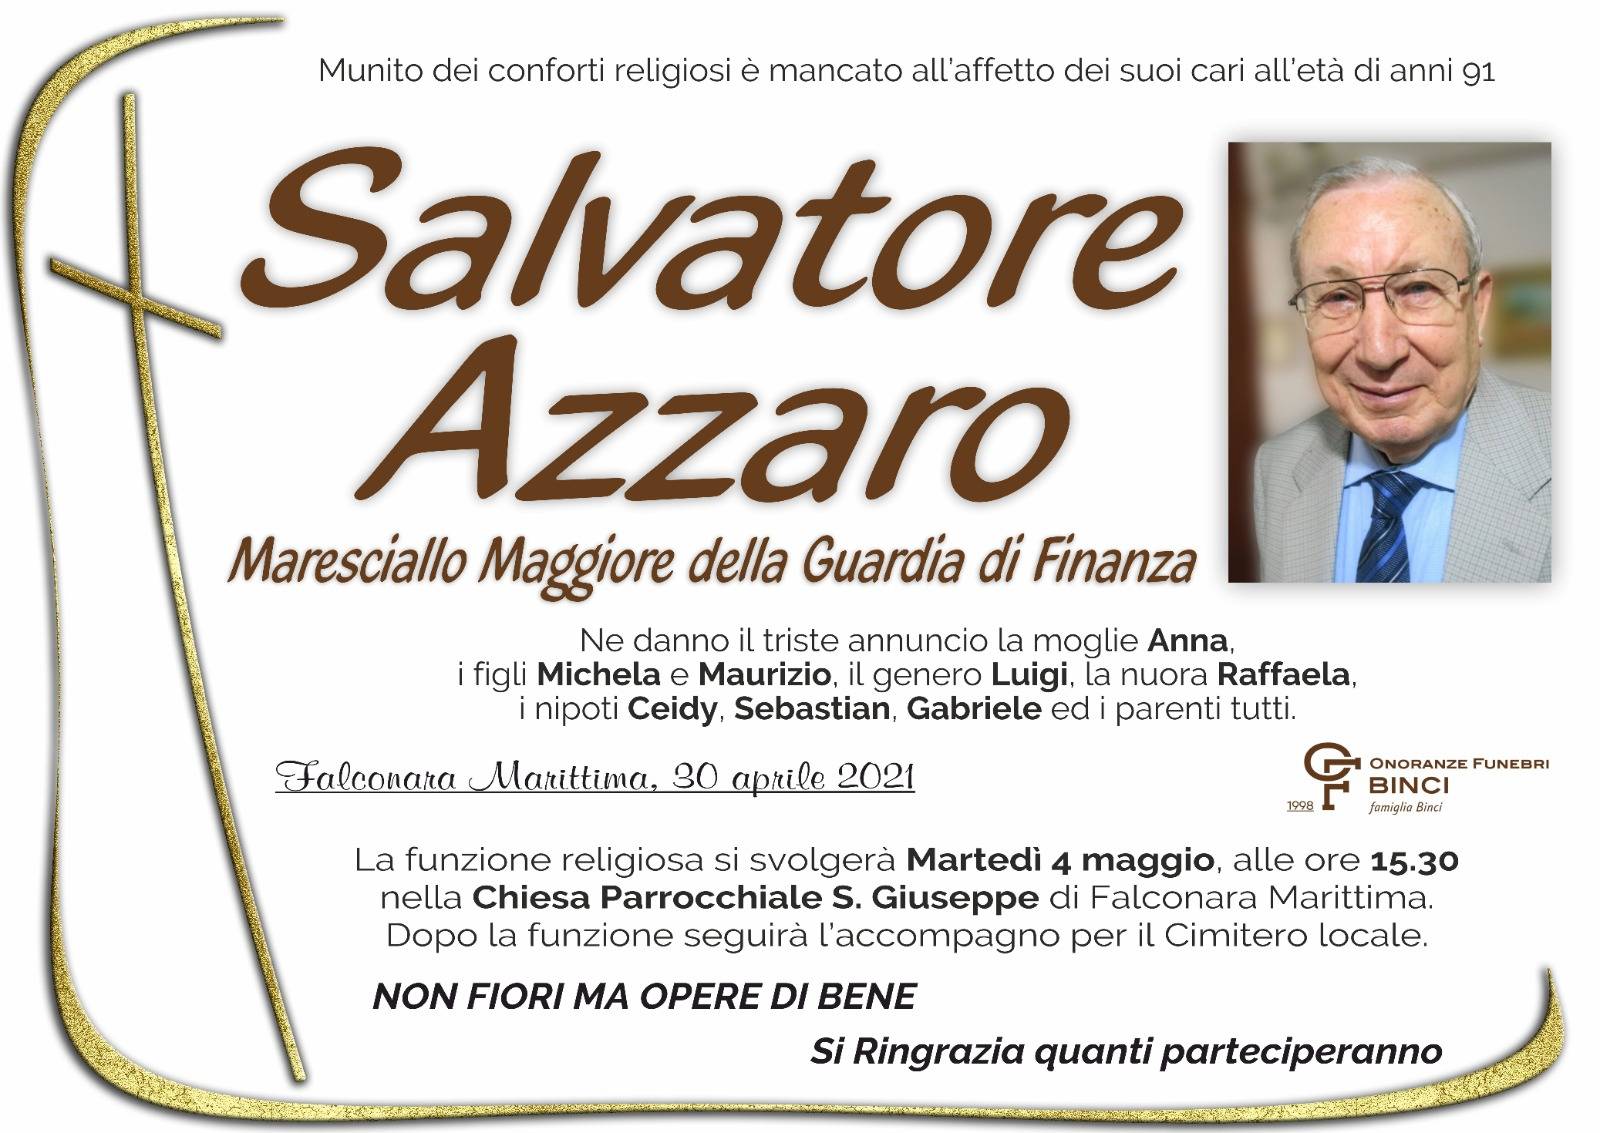 Salvatore Azzaro